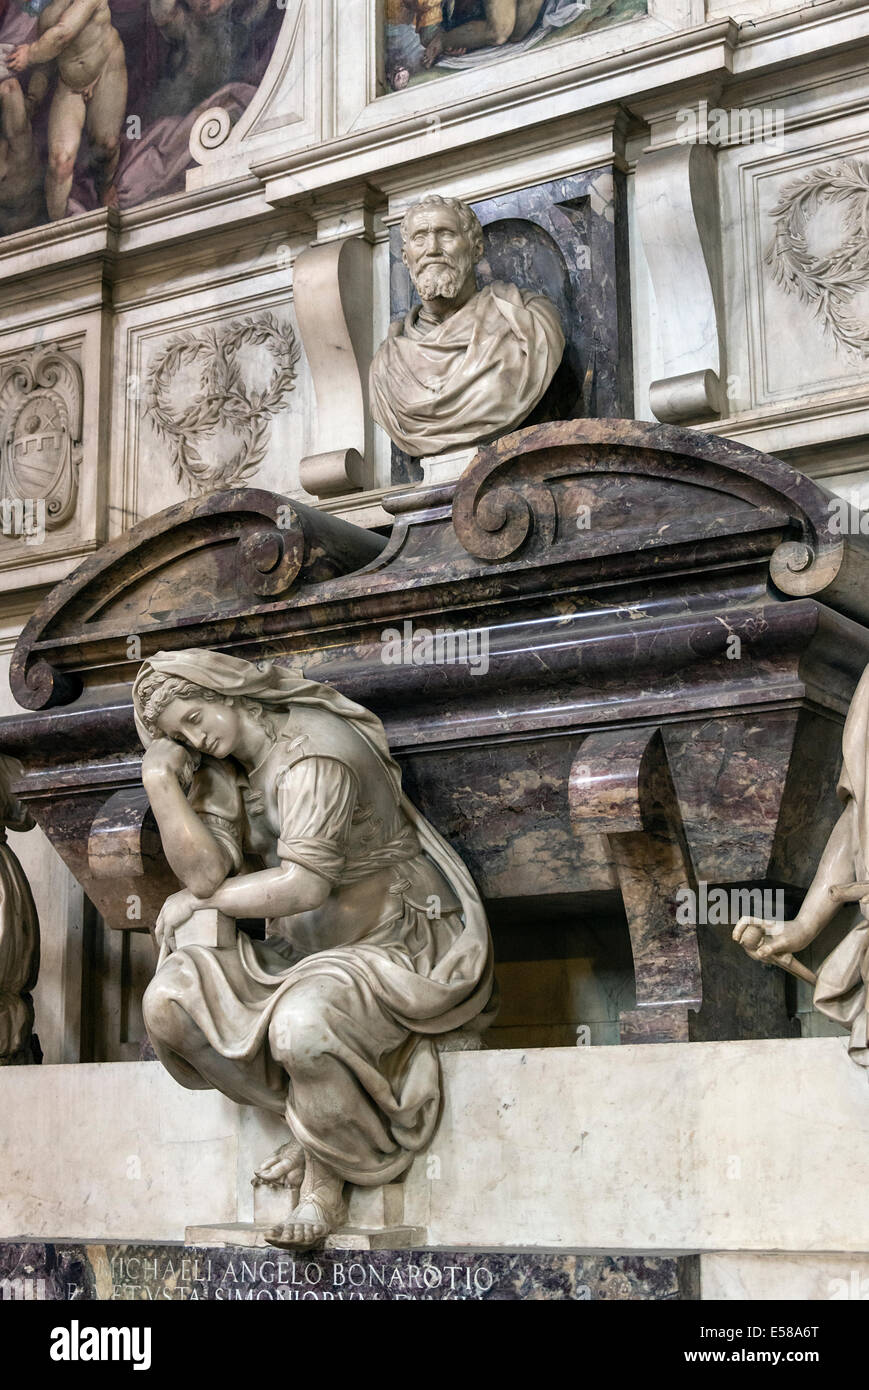 Michelangelo's Crypt situé dans l'église de la Basilique Santa Croce, Florence, Italie Banque D'Images